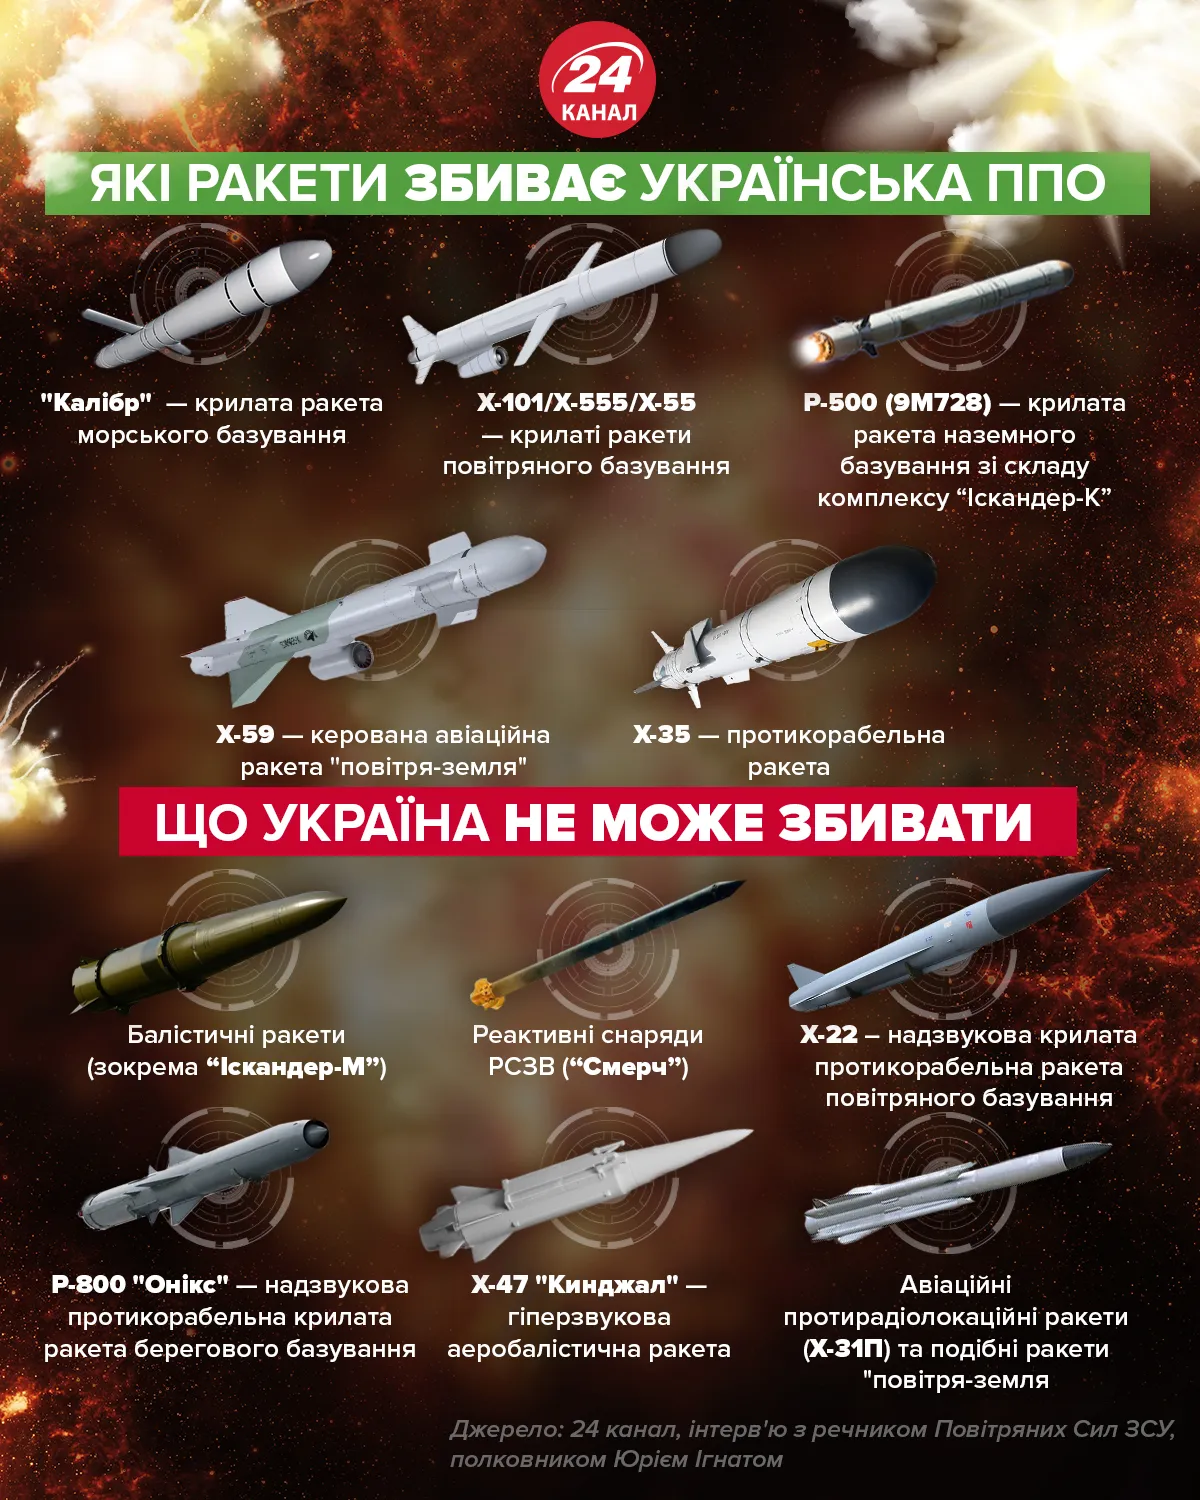 какие ракеты может сбивать украинская ппо